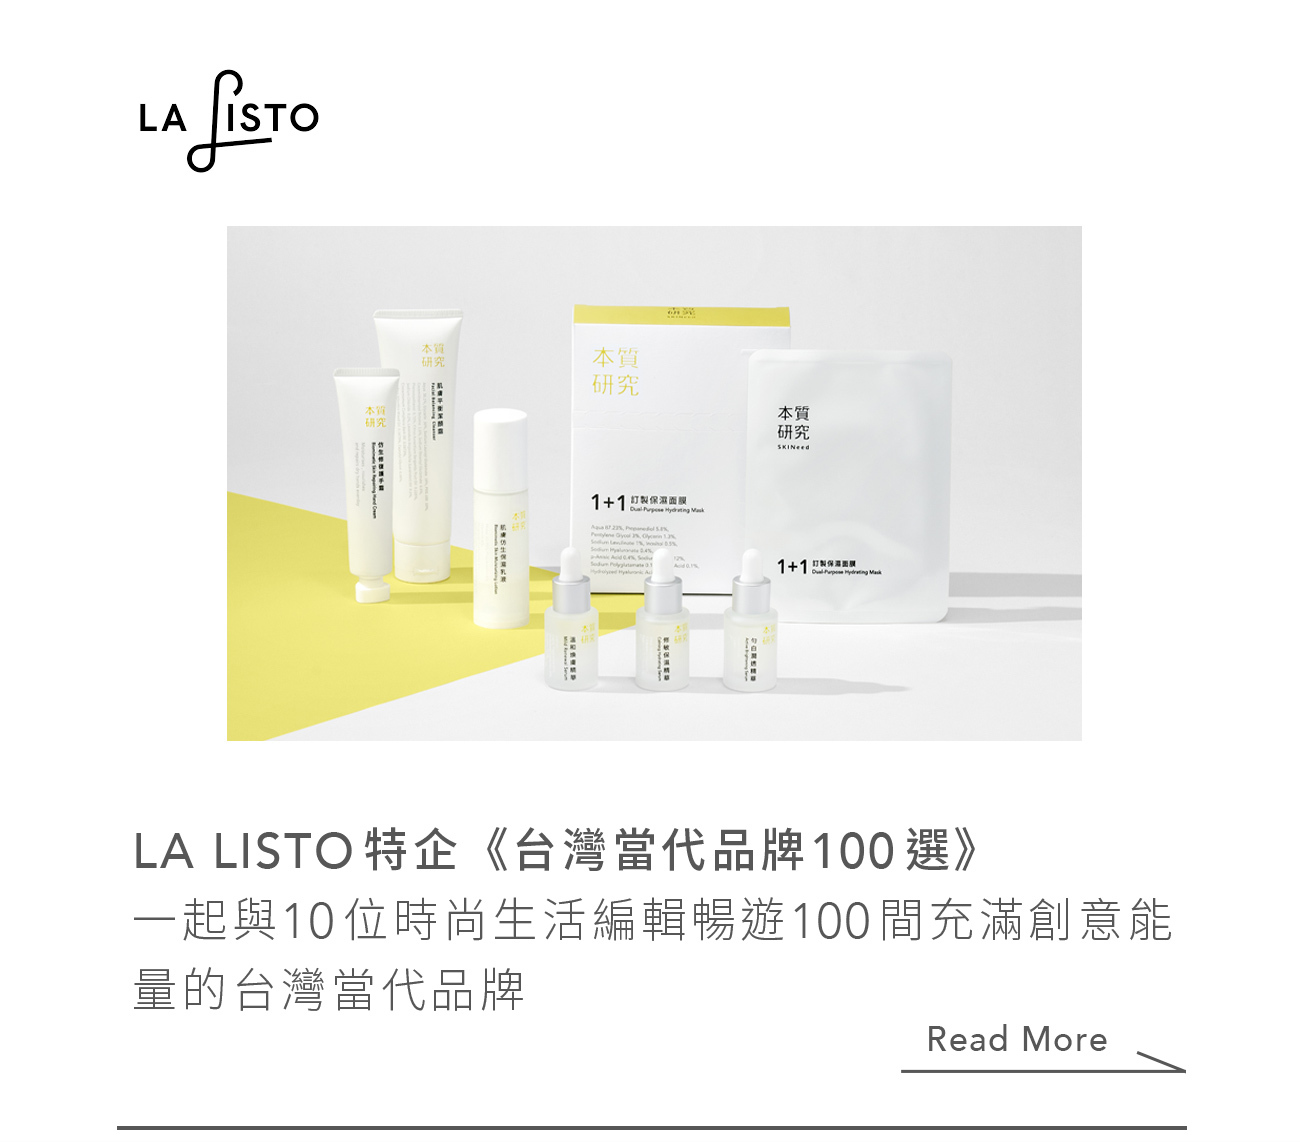 本質研究-LaListo 台灣當代品牌100選 報導